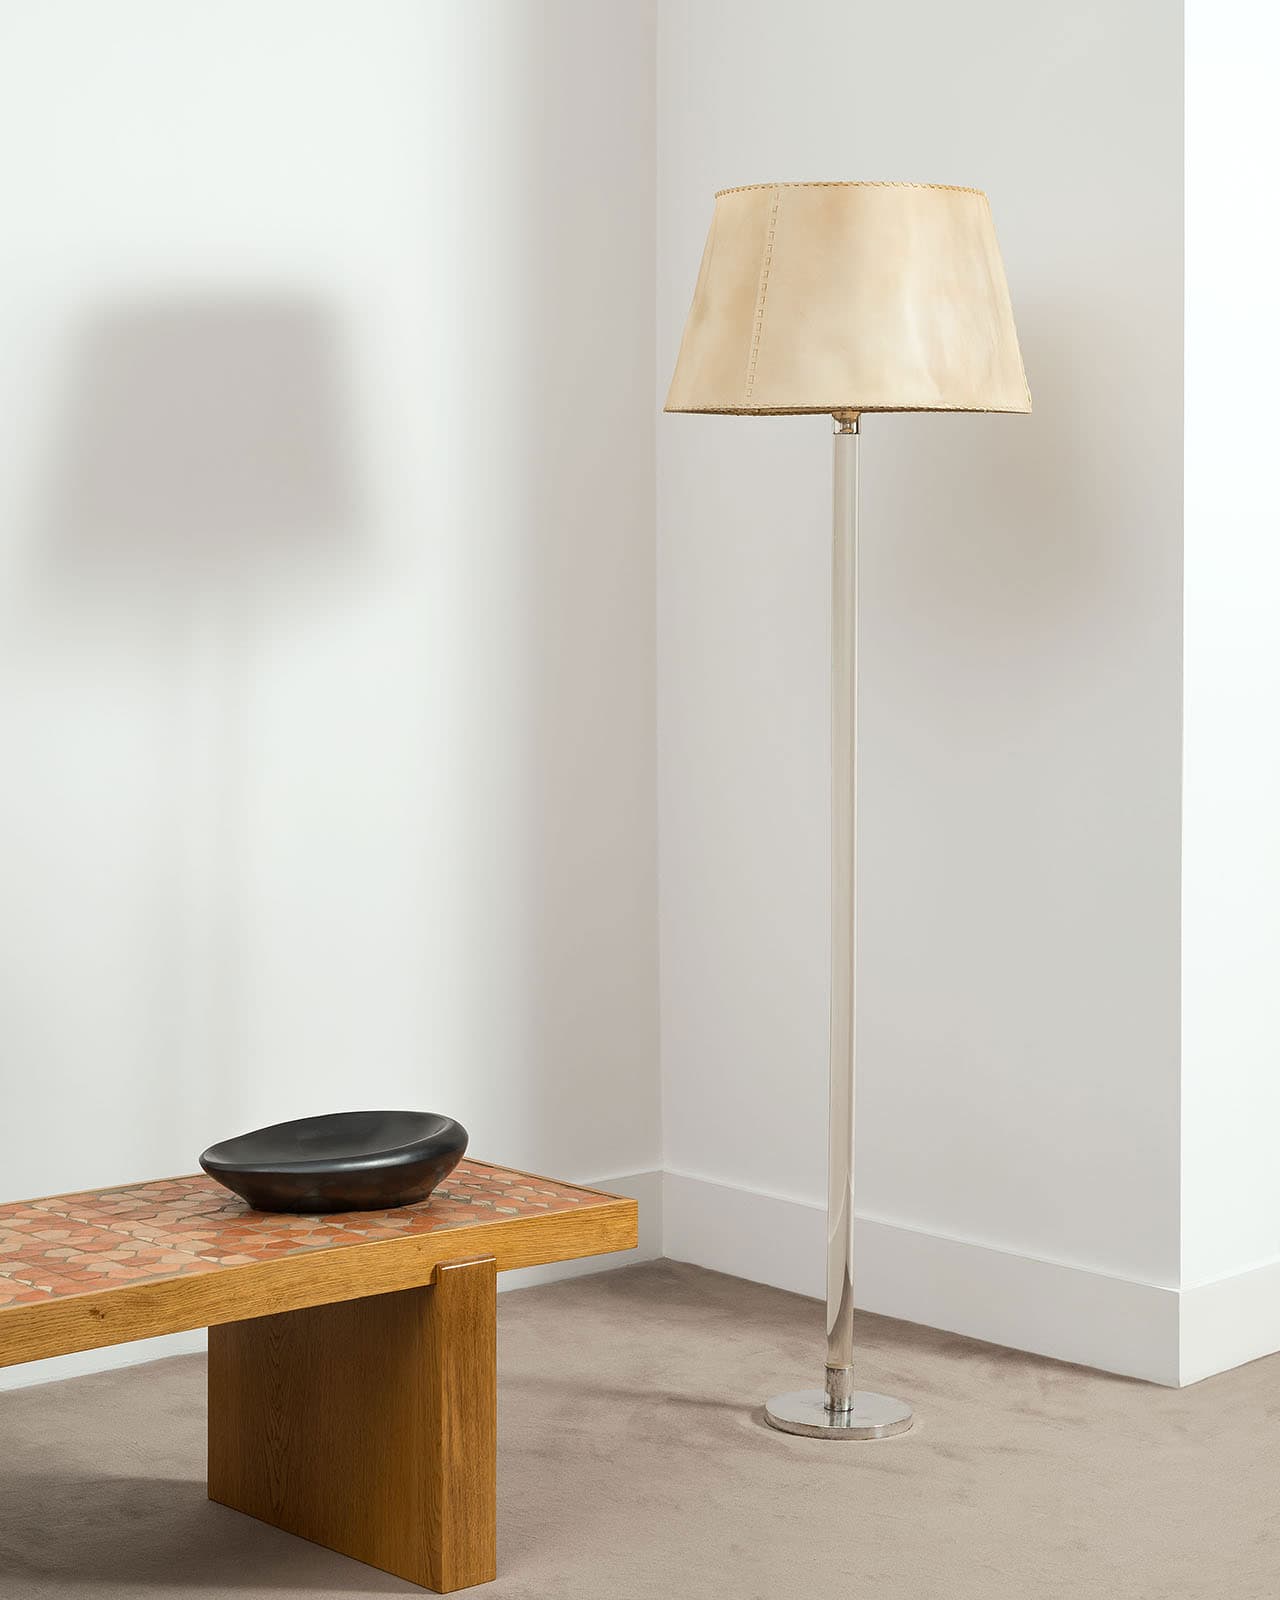 Jean-Michel Frank, Rare floor lamp (sold), vue 01